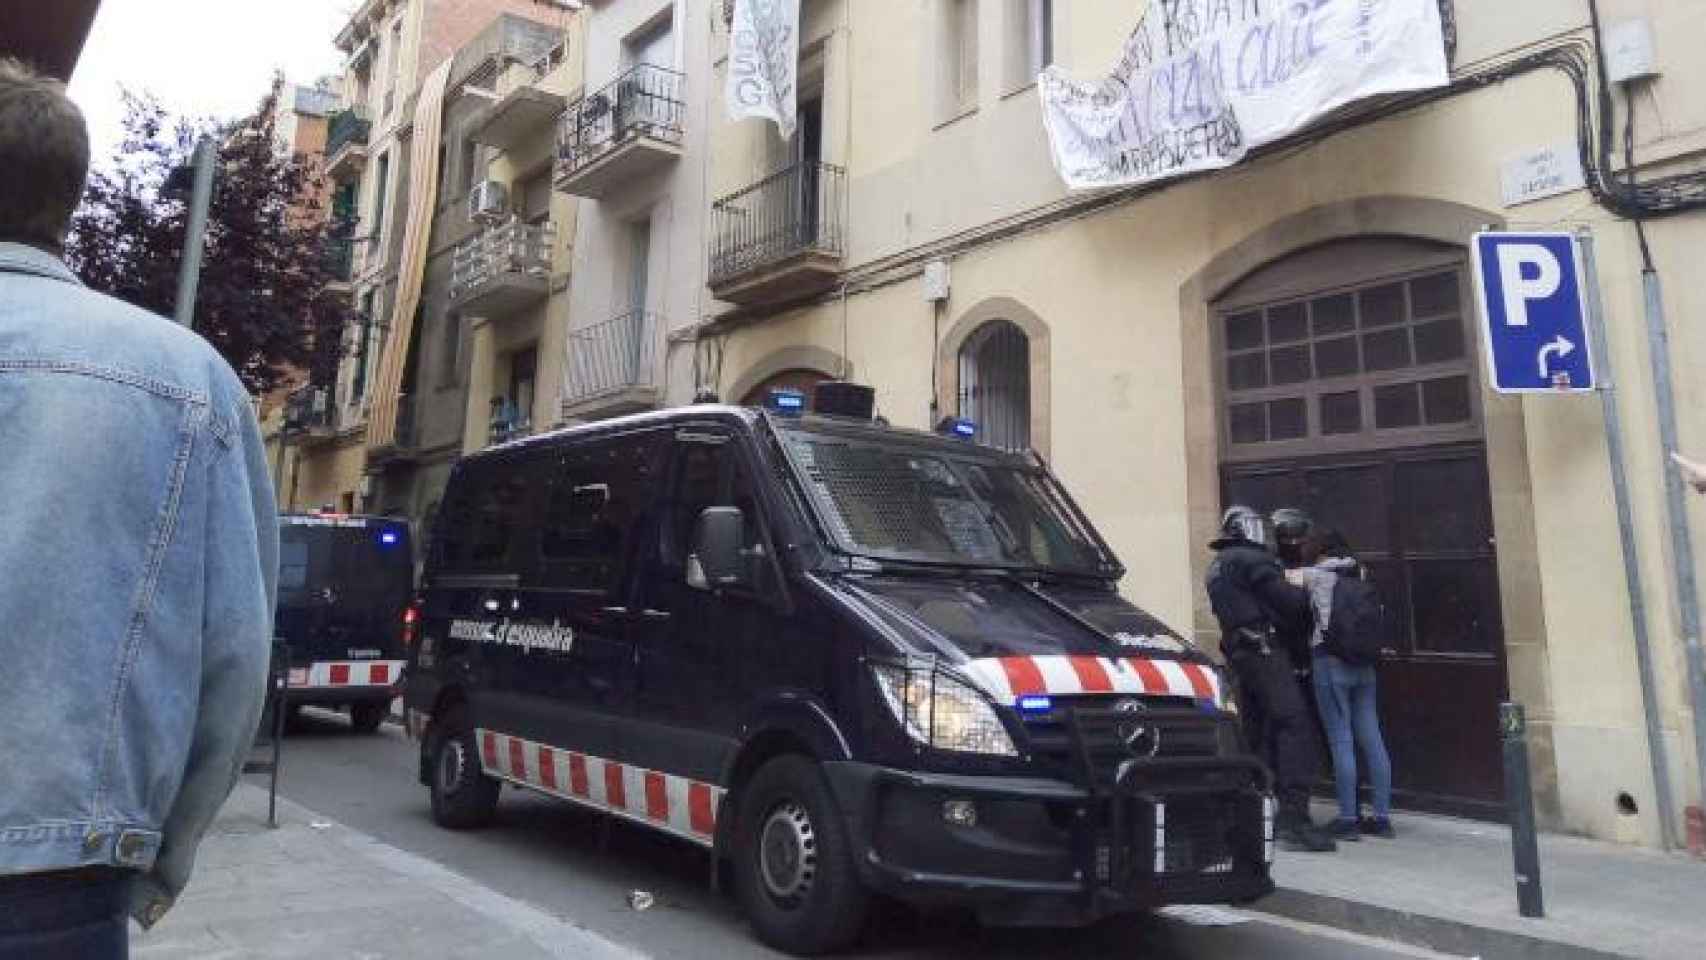 Imagen del desalojo del bloque okupado Gayarre 42, en Sants (Barcelona) / CG